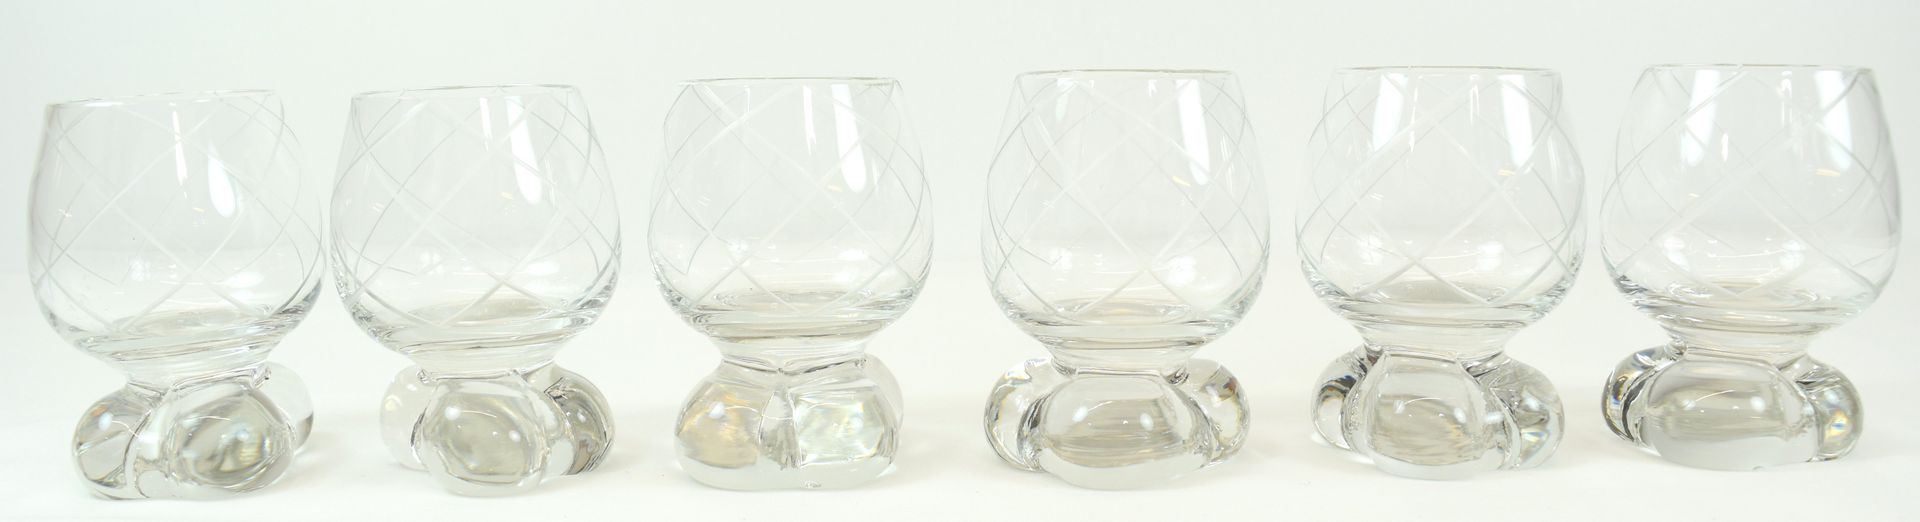 Null 6 verres en verre blanc (H: 8 cm & diam: 4.5 cm) 

Beschrijving in het Nede&hellip;